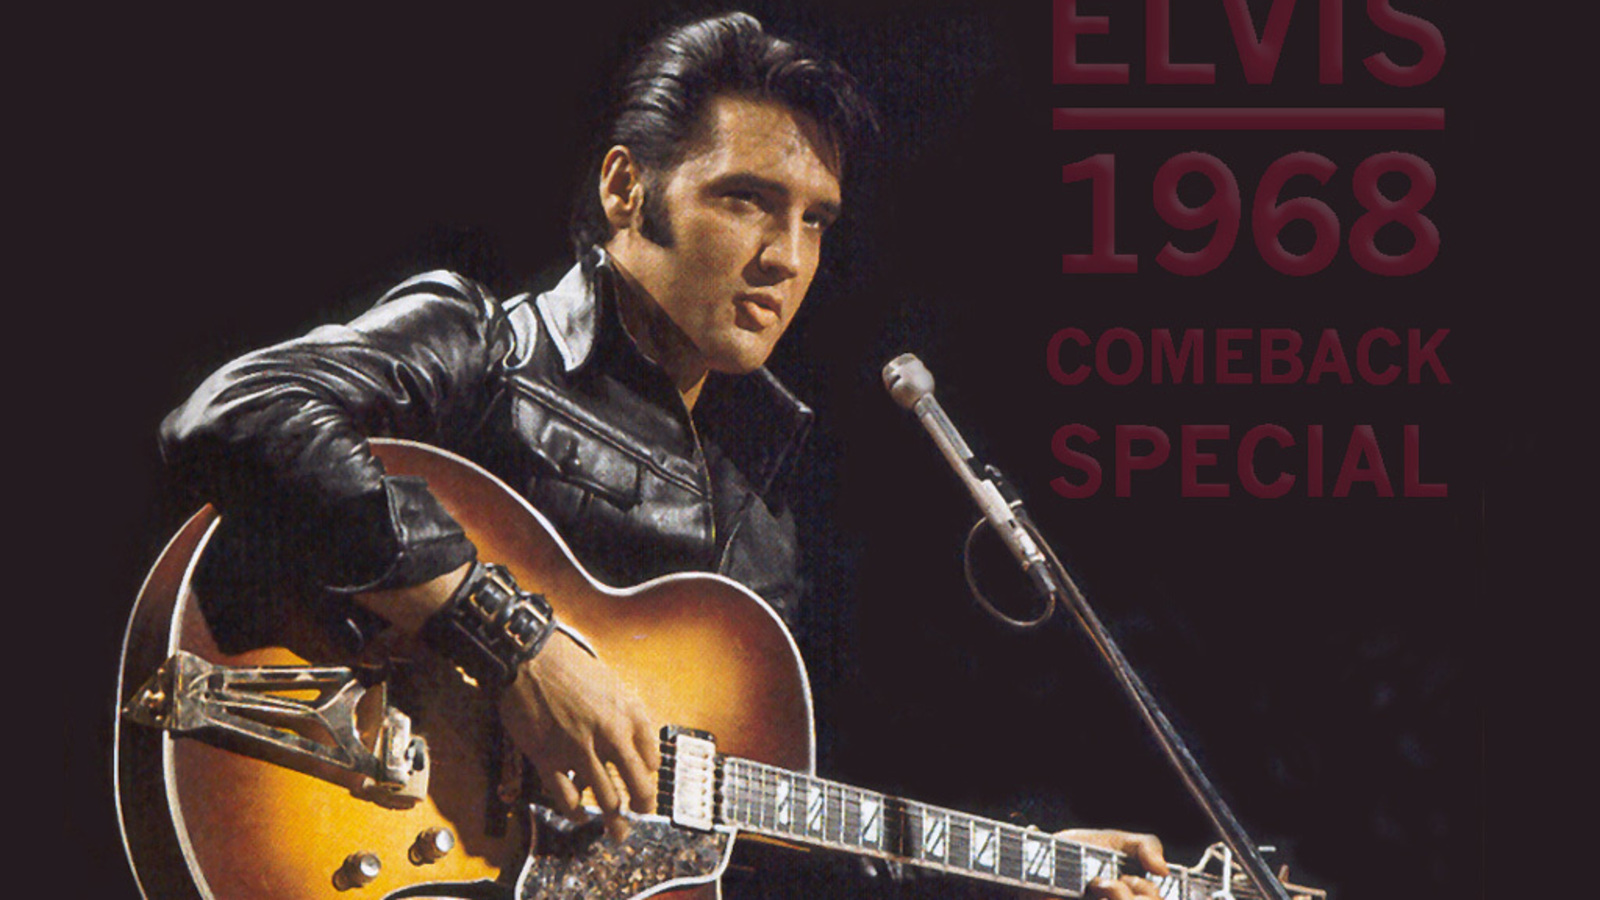 Elvis Presley Computer Wallpapers, Desktop Backgrounds 1600x900